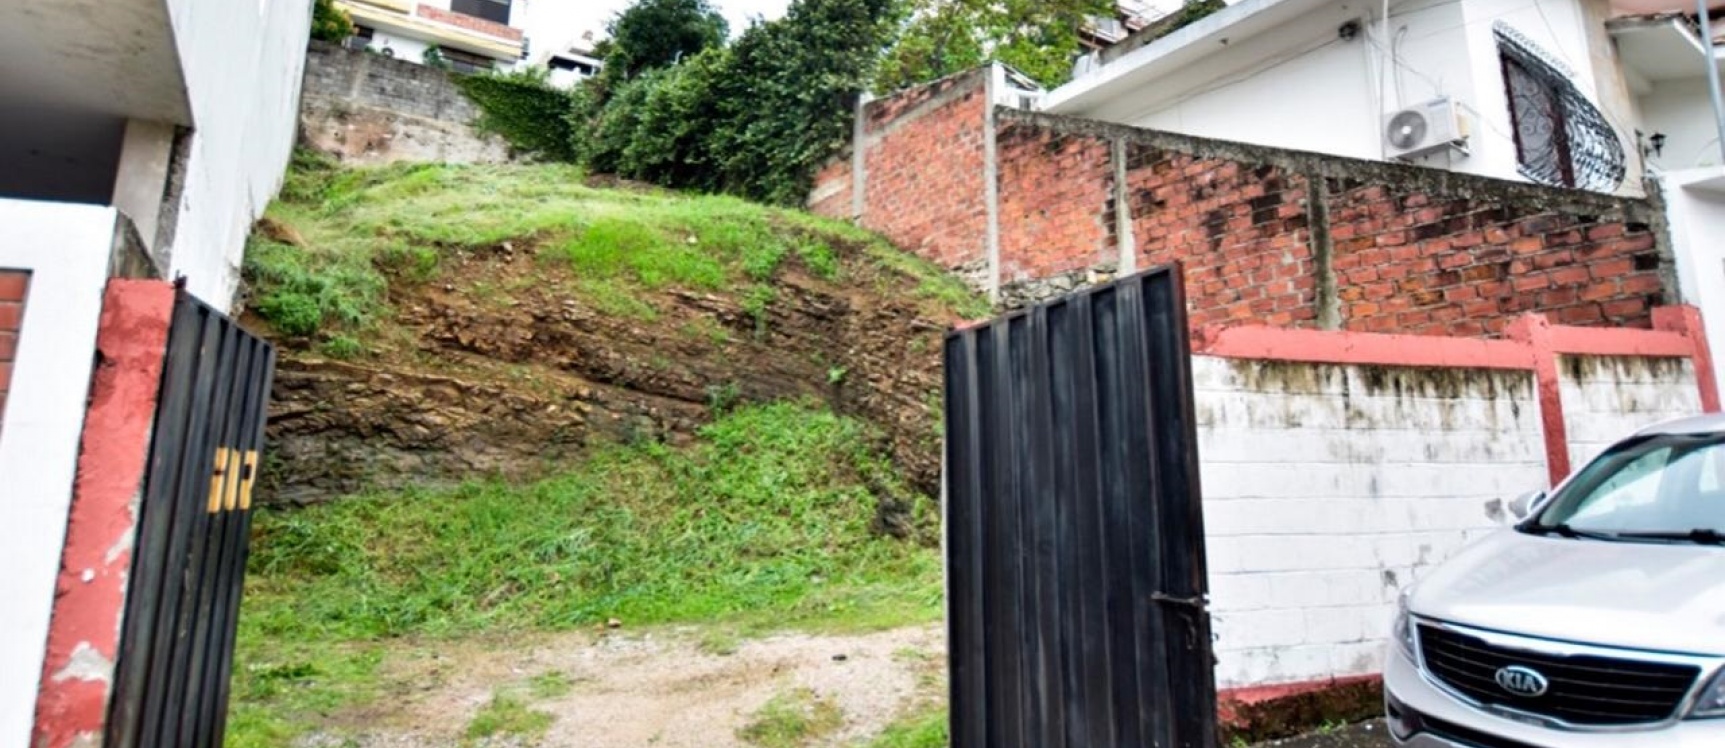 GeoBienes - Terreno en venta Lomas de Urdesa, Guayaquil - Ecuador - Plusvalia Guayaquil Casas de venta y alquiler Inmobiliaria Ecuador